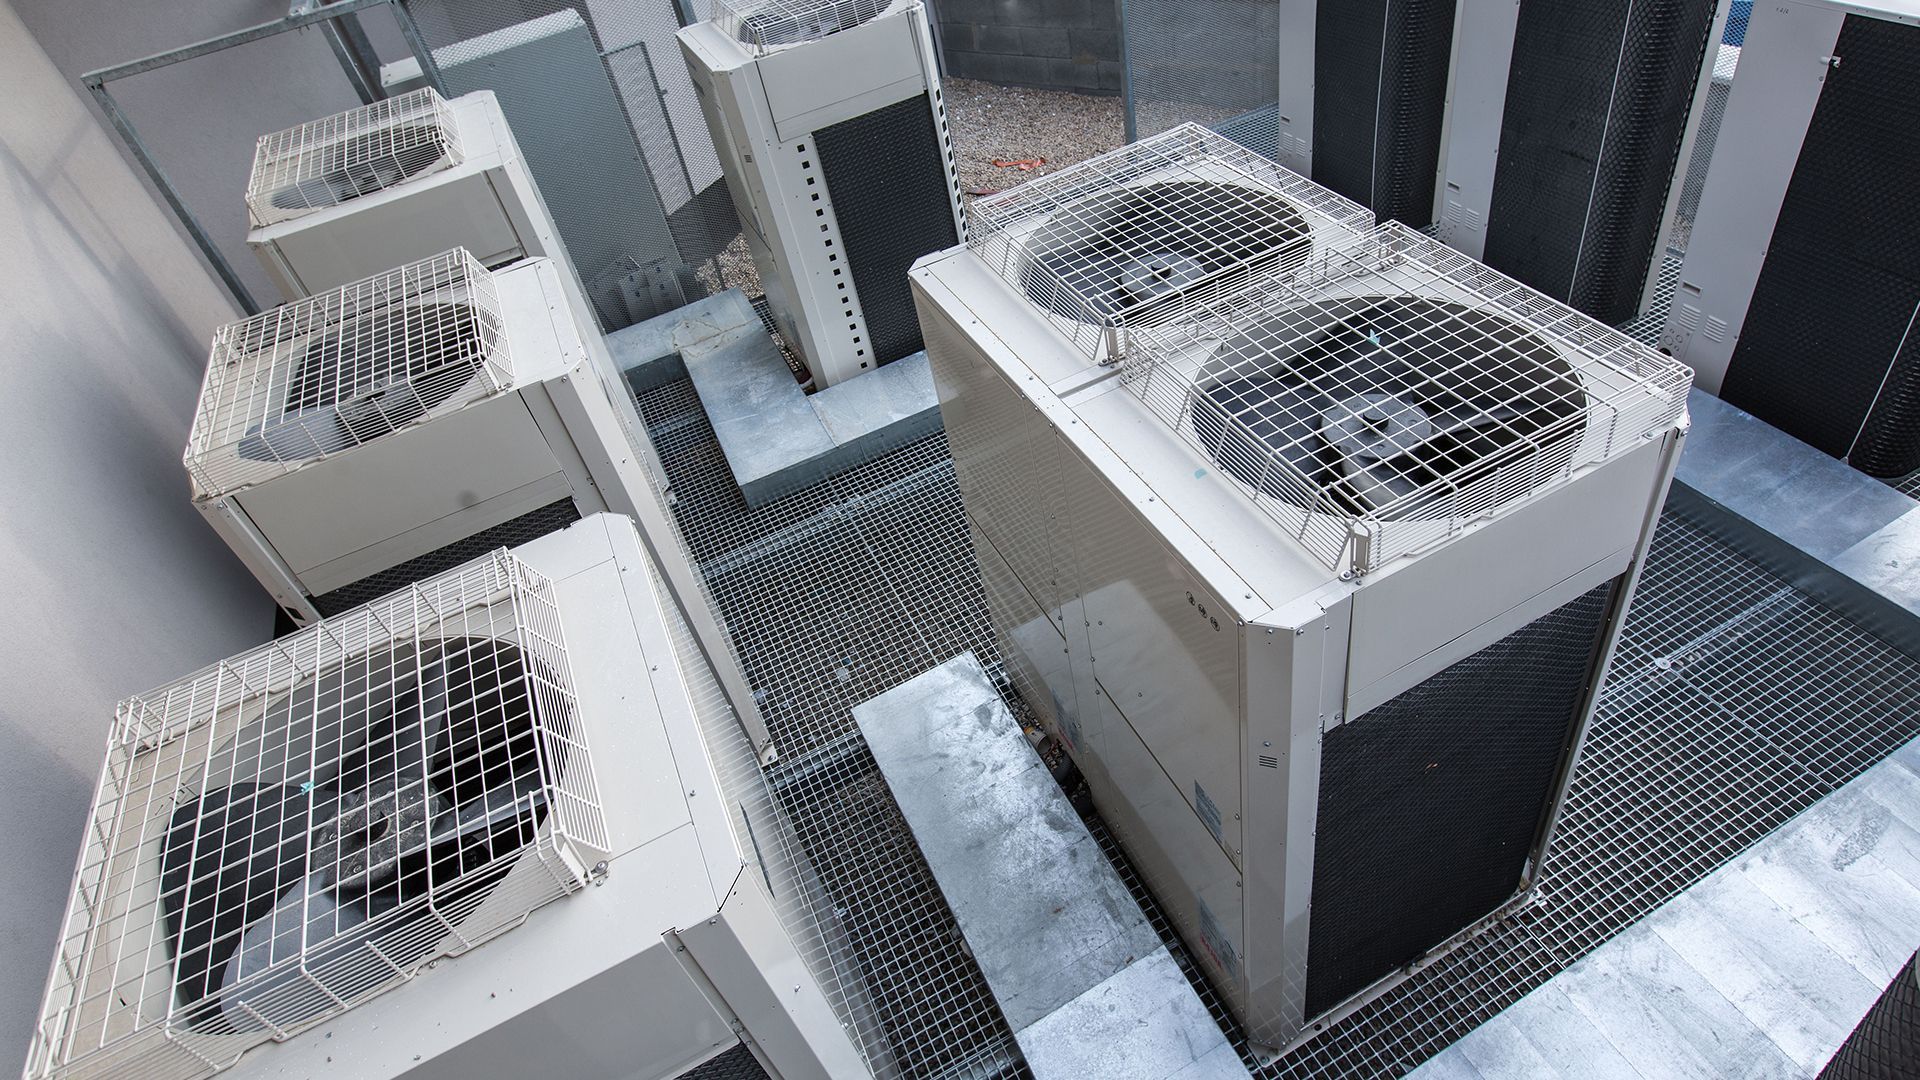 Commercial HVAC units